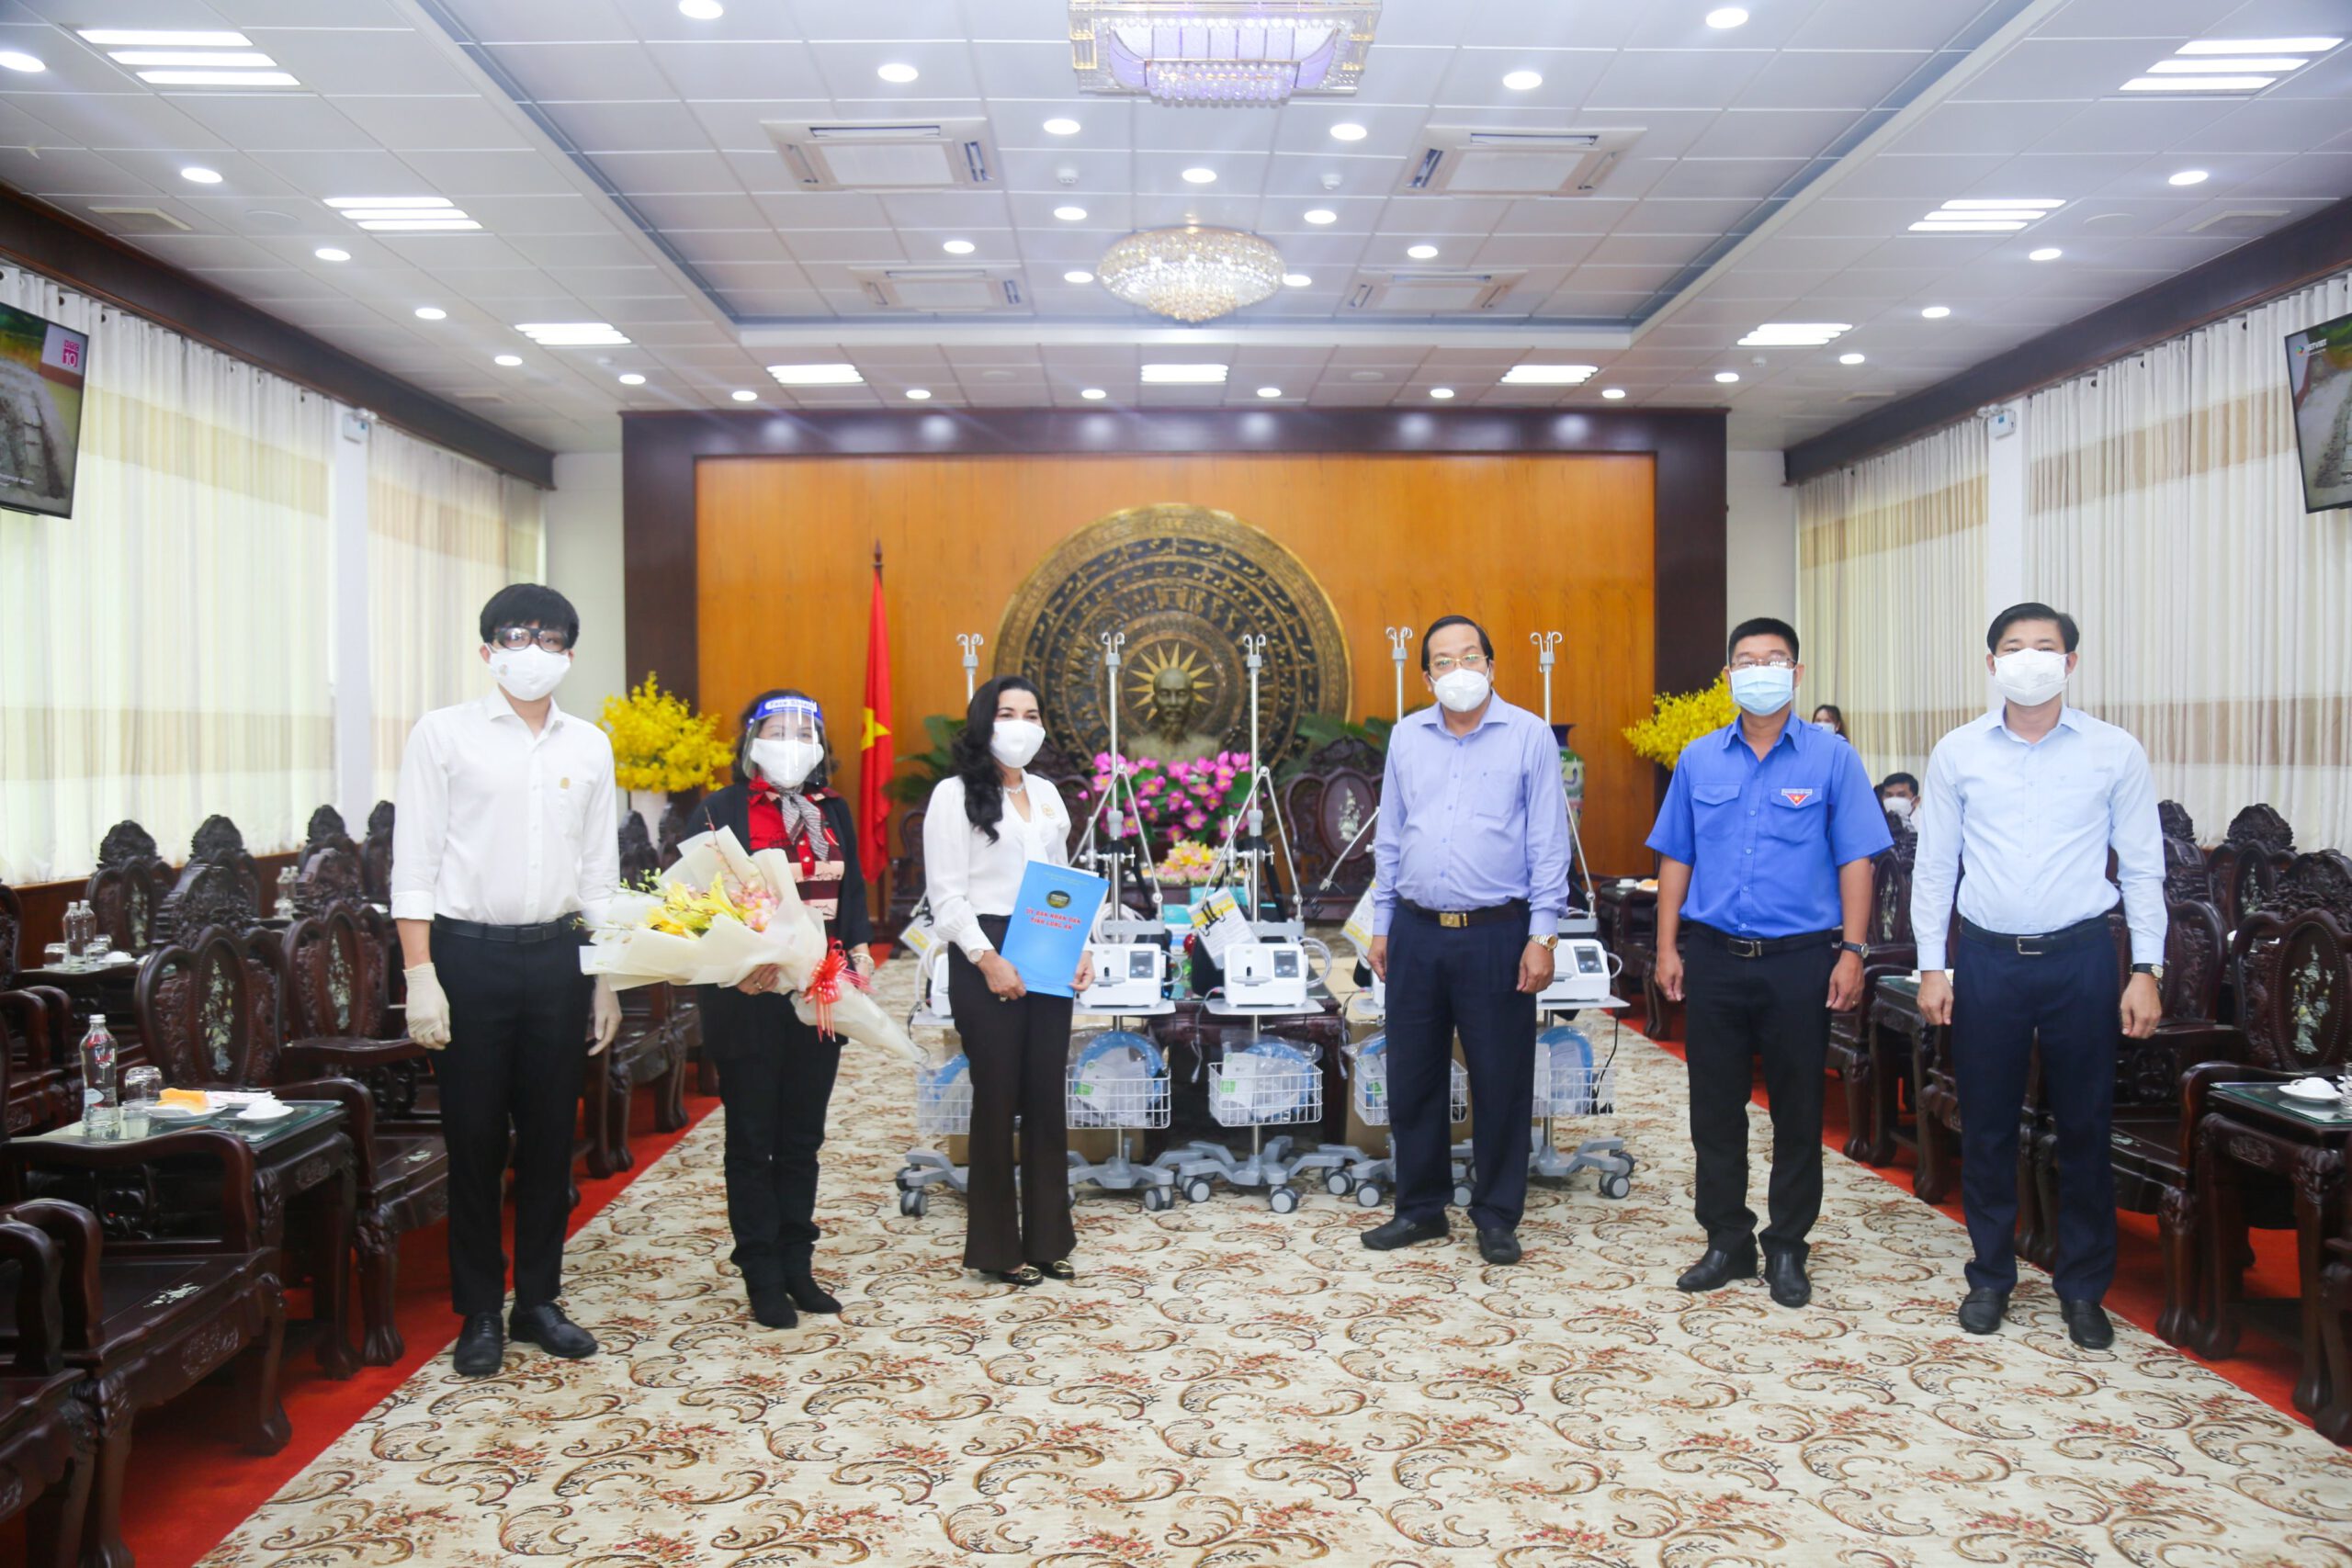 Doanh nhân Đặng Thị Kim Oanh - Chủ tịch Tập đoàn Kim Oanh nhận kỷ niệm chương tại Lễ trao giải “Nhân vật truyền cảm hứng 2021”.